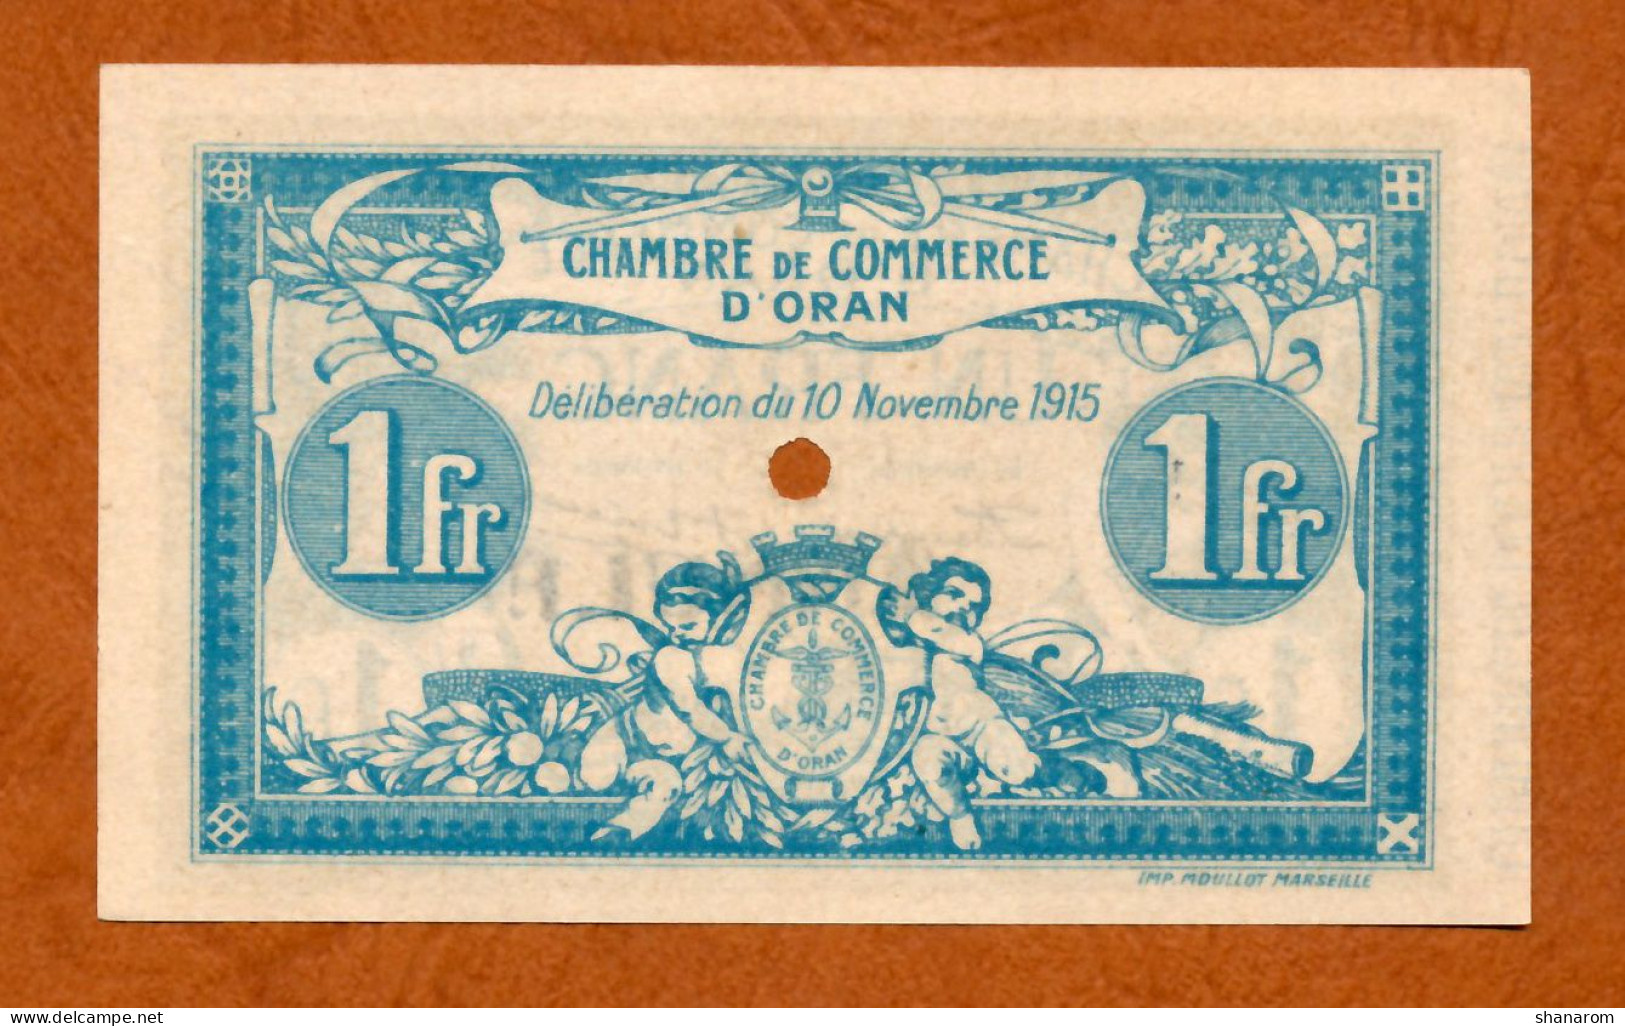 1915 // ALGERIE // ORAN // Chambre De Commerce // Un Franc // Billet Mention ANNULE // UNC-NEUF - Algerien